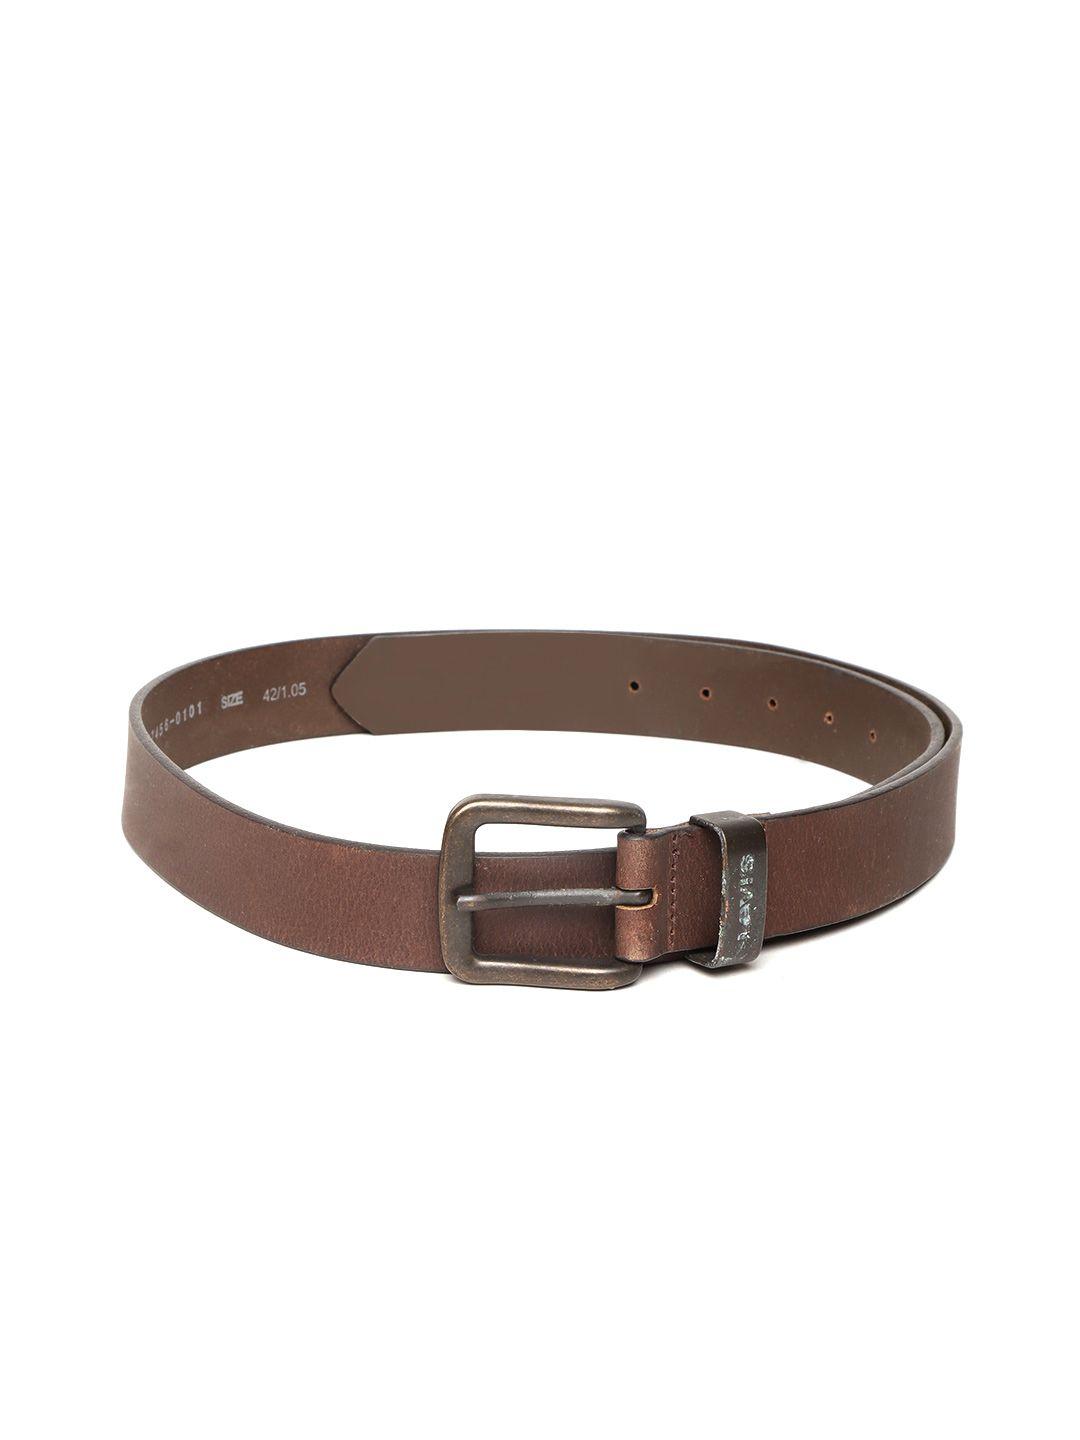 levis-men-brown-solid-leather-belt